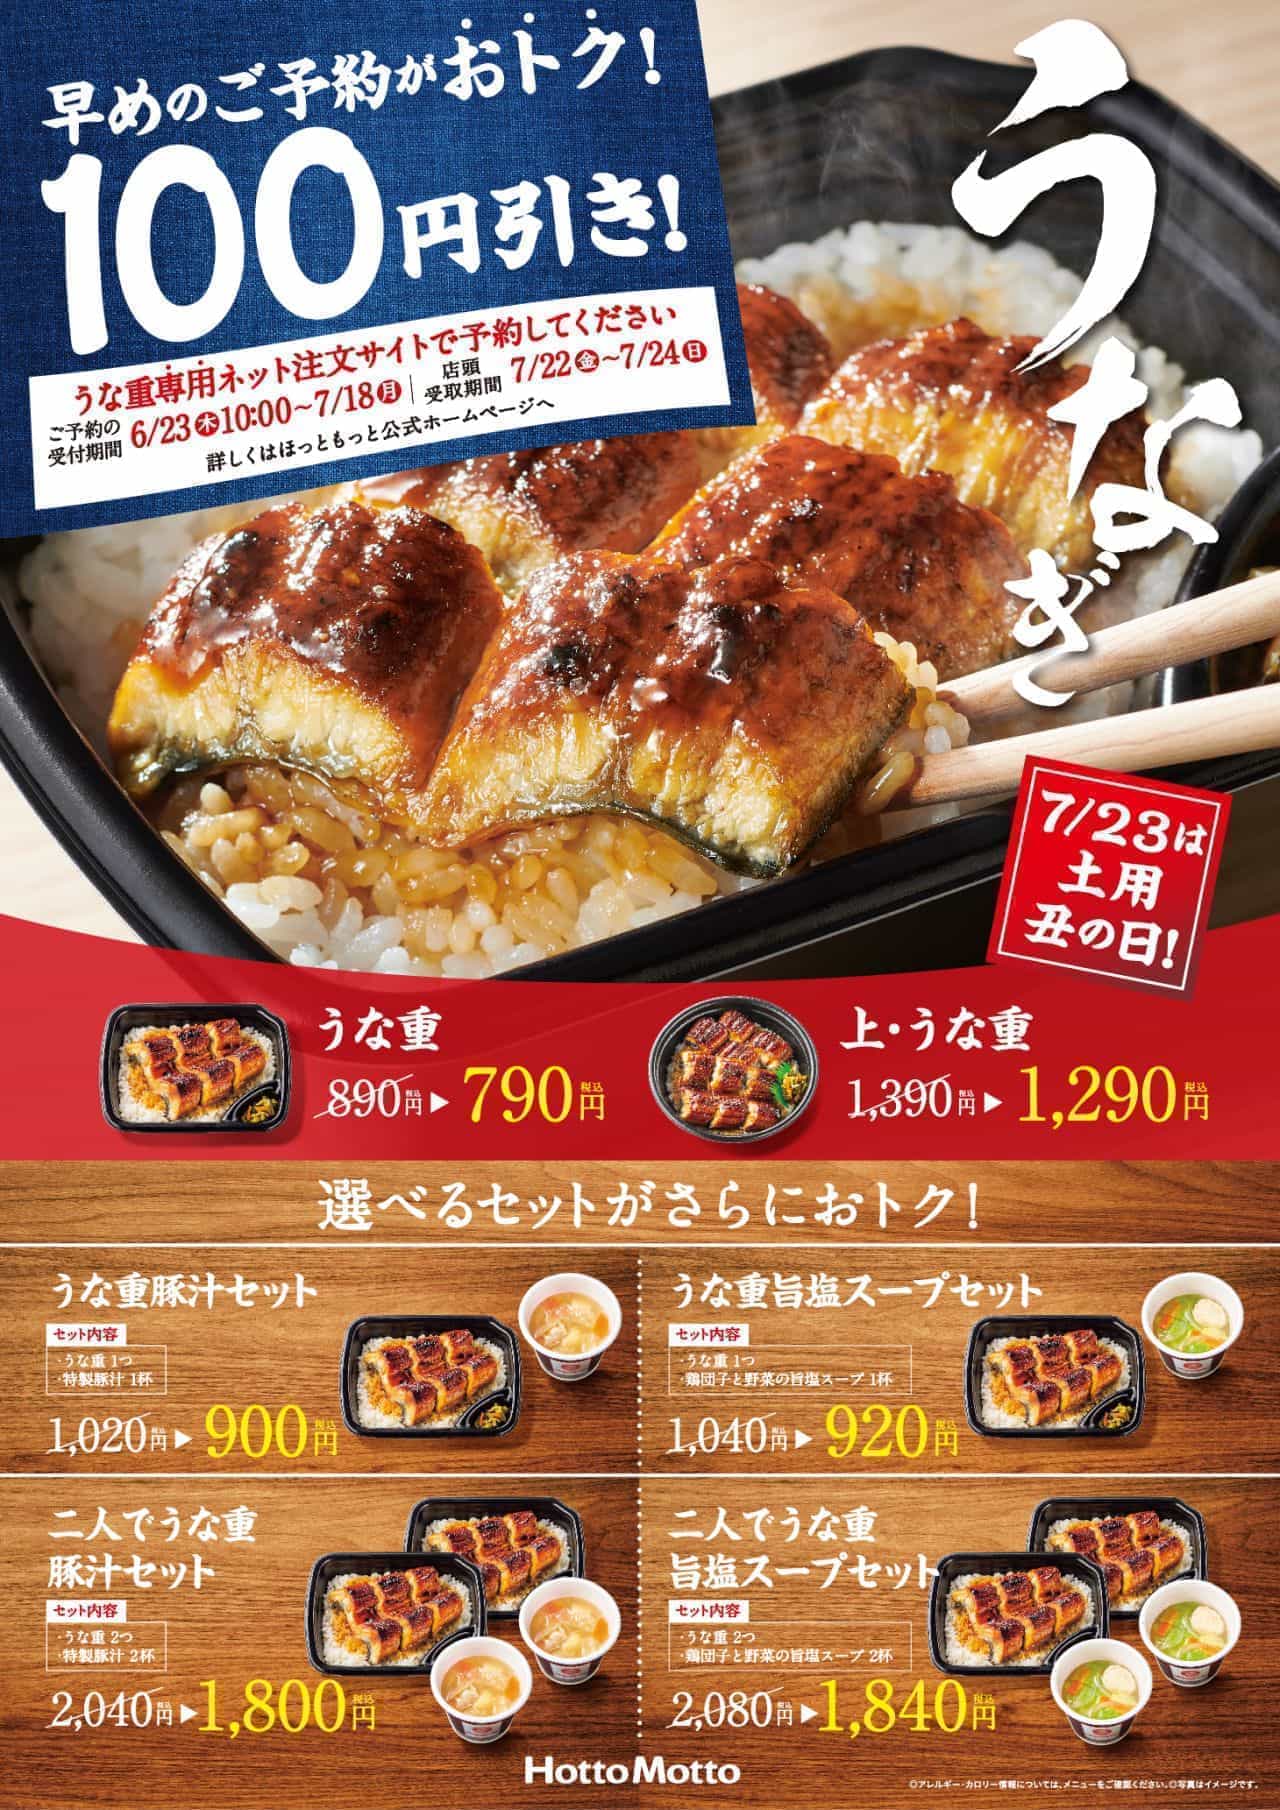 ほっともっと「うな重」「上・うな重」予約で100円引きキャンペーン